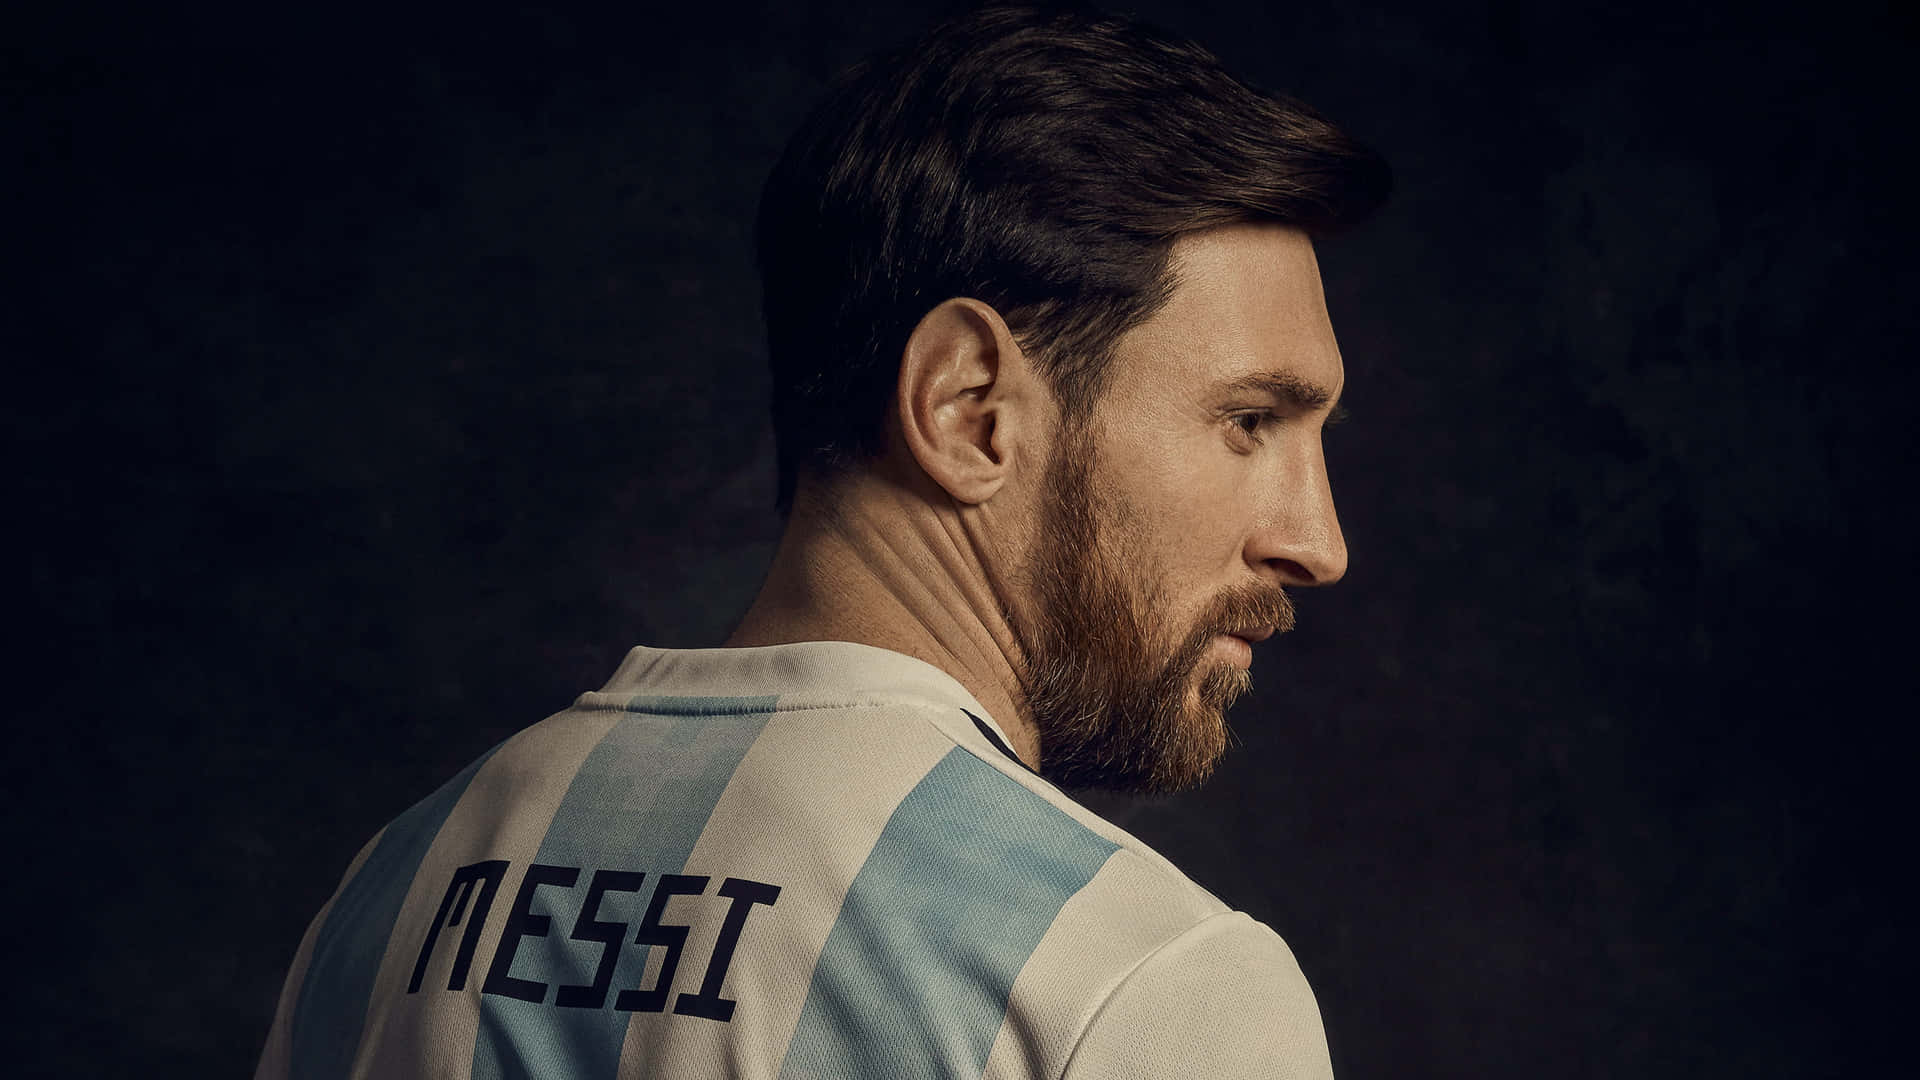 Ilmaestoso Lionel Messi Che Calcia Un Pallone Da Calcio Mistico.